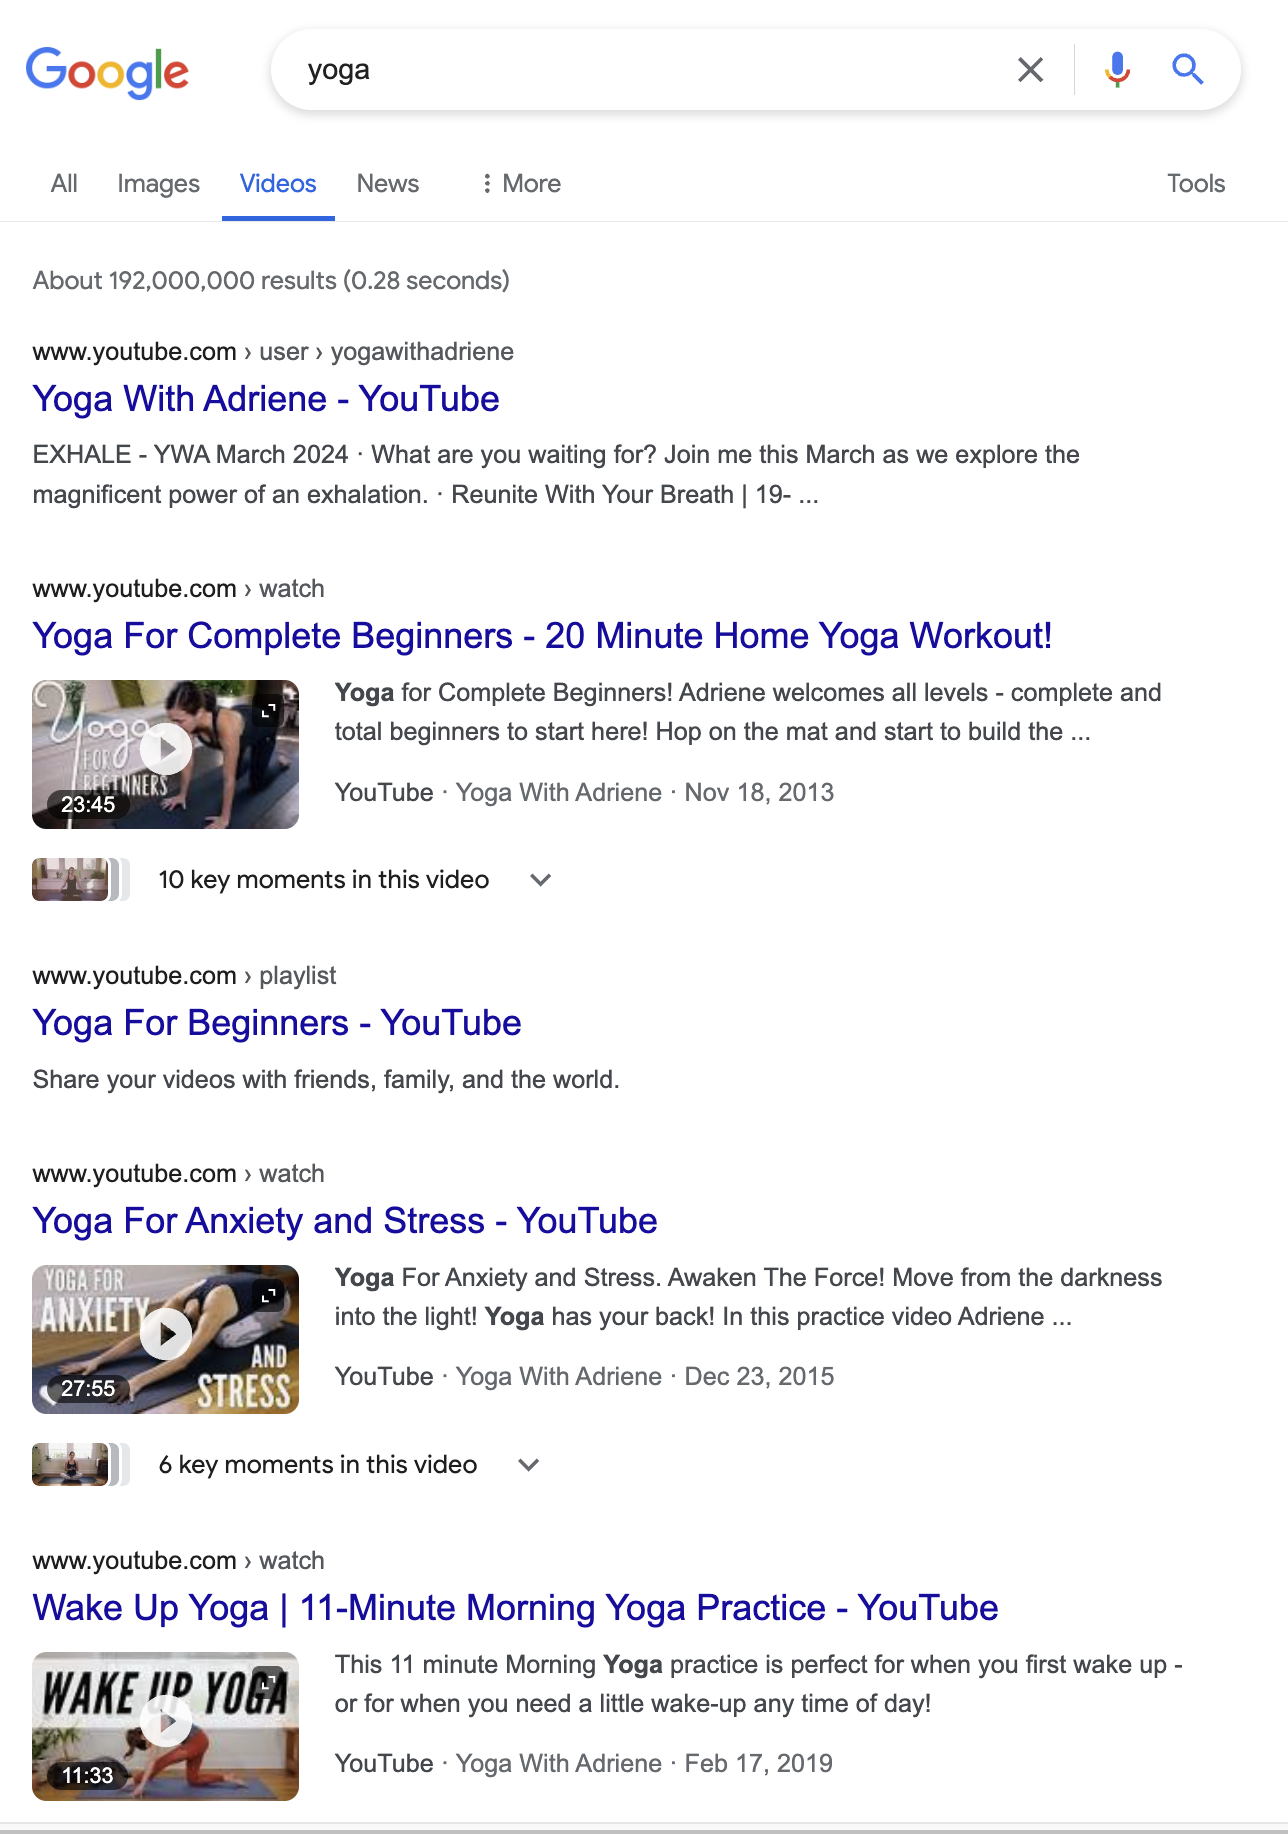 구글에 Yoga를 검색하면 YWA 컨텐츠로 첫 페이지가 완전히 뒤덮인다